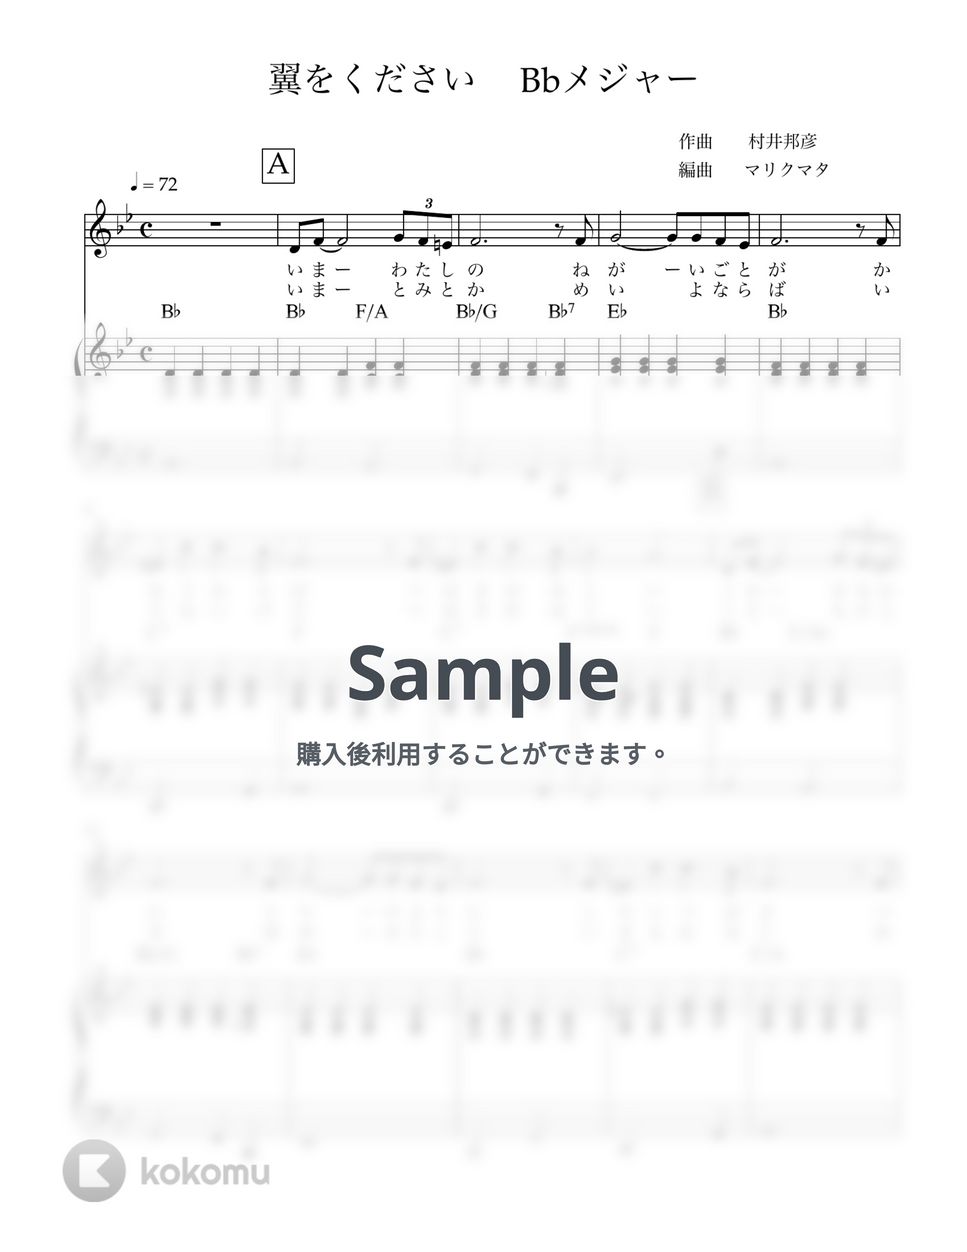 村井邦彦 - 翼をください(key in Bb) 歌とピアノ by マリクマタ